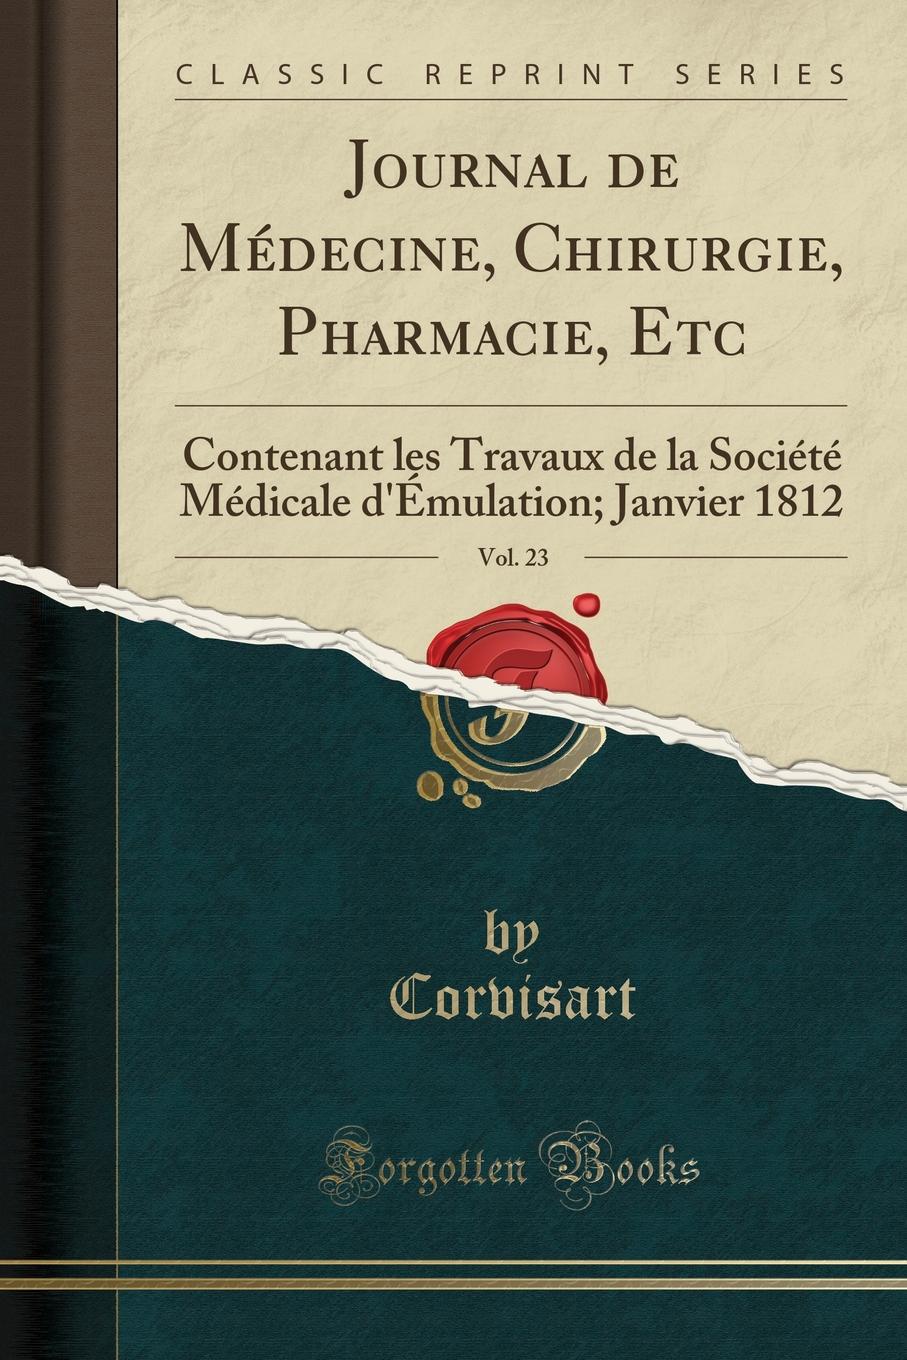 Corvisart Corvisart Journal de Medecine, Chirurgie, Pharmacie, Etc, Vol. 23. Contenant les Travaux de la Societe Medicale d.Emulation; Janvier 1812 (Classic Reprint)